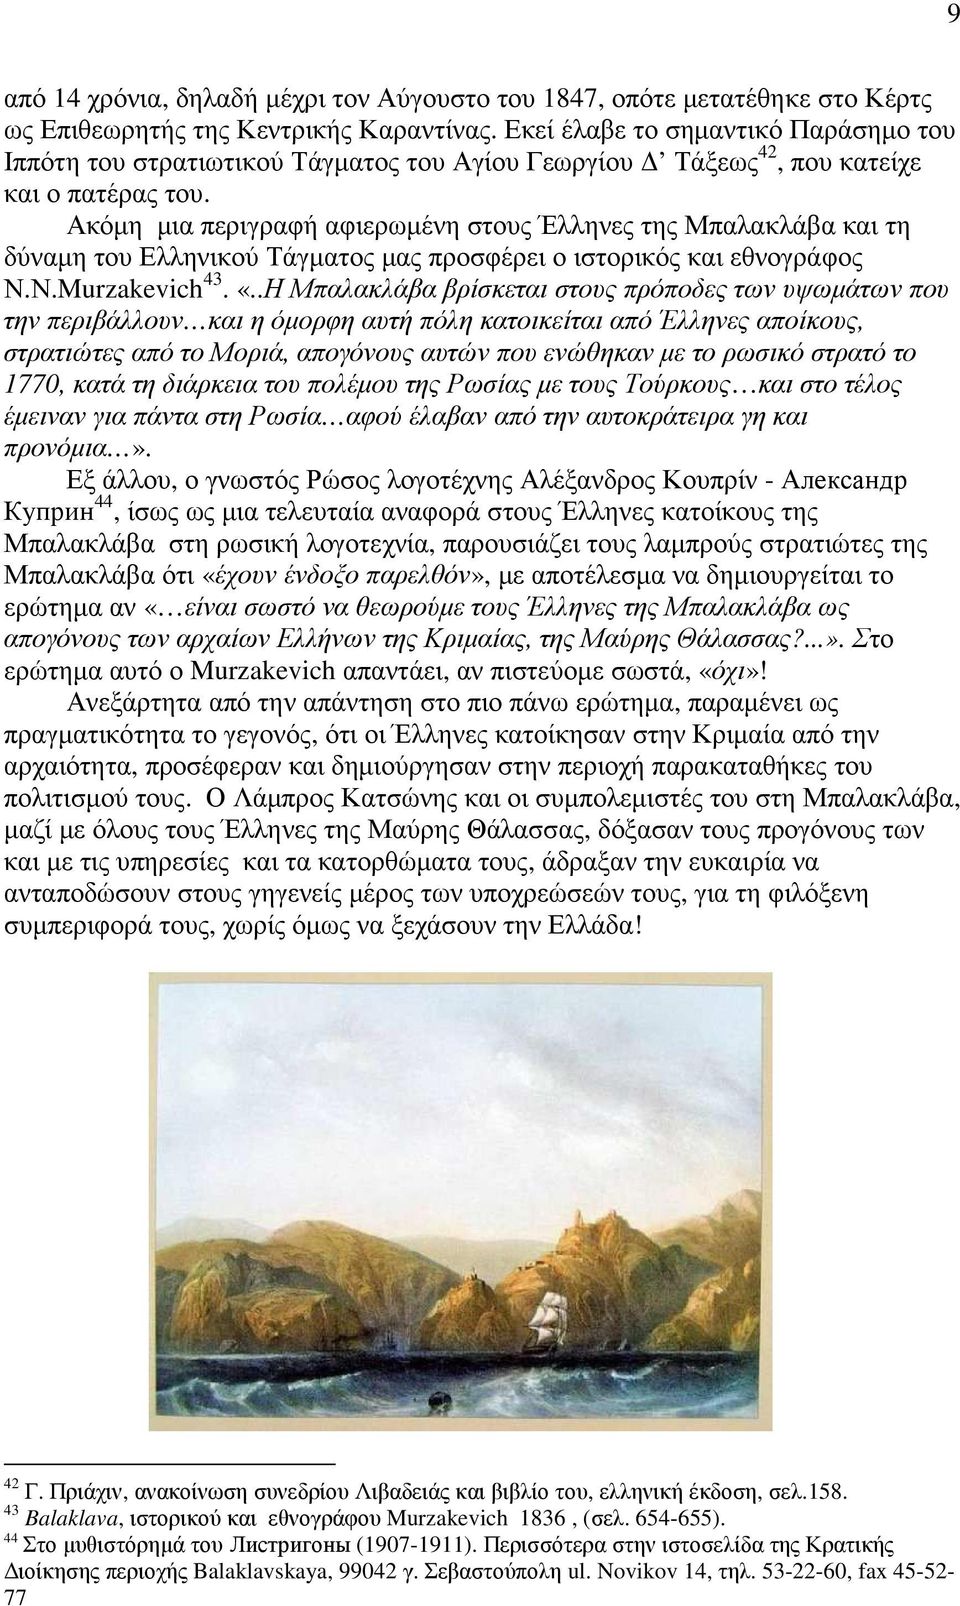 Ακόµη µια περιγραφή αφιερωµένη στους Έλληνες της Μπαλακλάβα και τη δύναµη του Ελληνικού Τάγµατος µας προσφέρει ο ιστορικός και εθνογράφος Ν.Ν.Murzakevich 43. «.